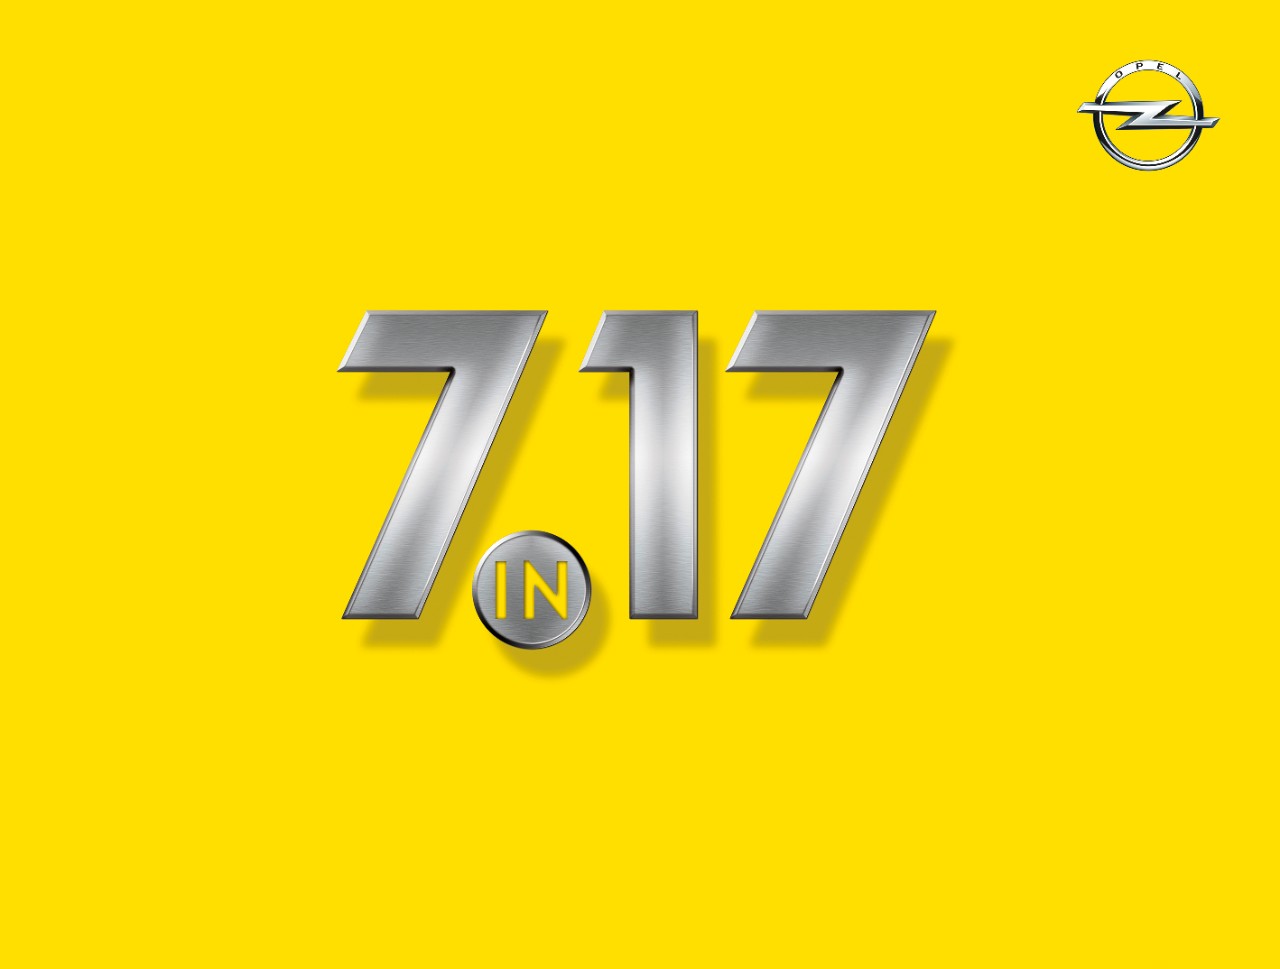 Opel bringt im Jahr 2017 sieben neue Modelle heraus.